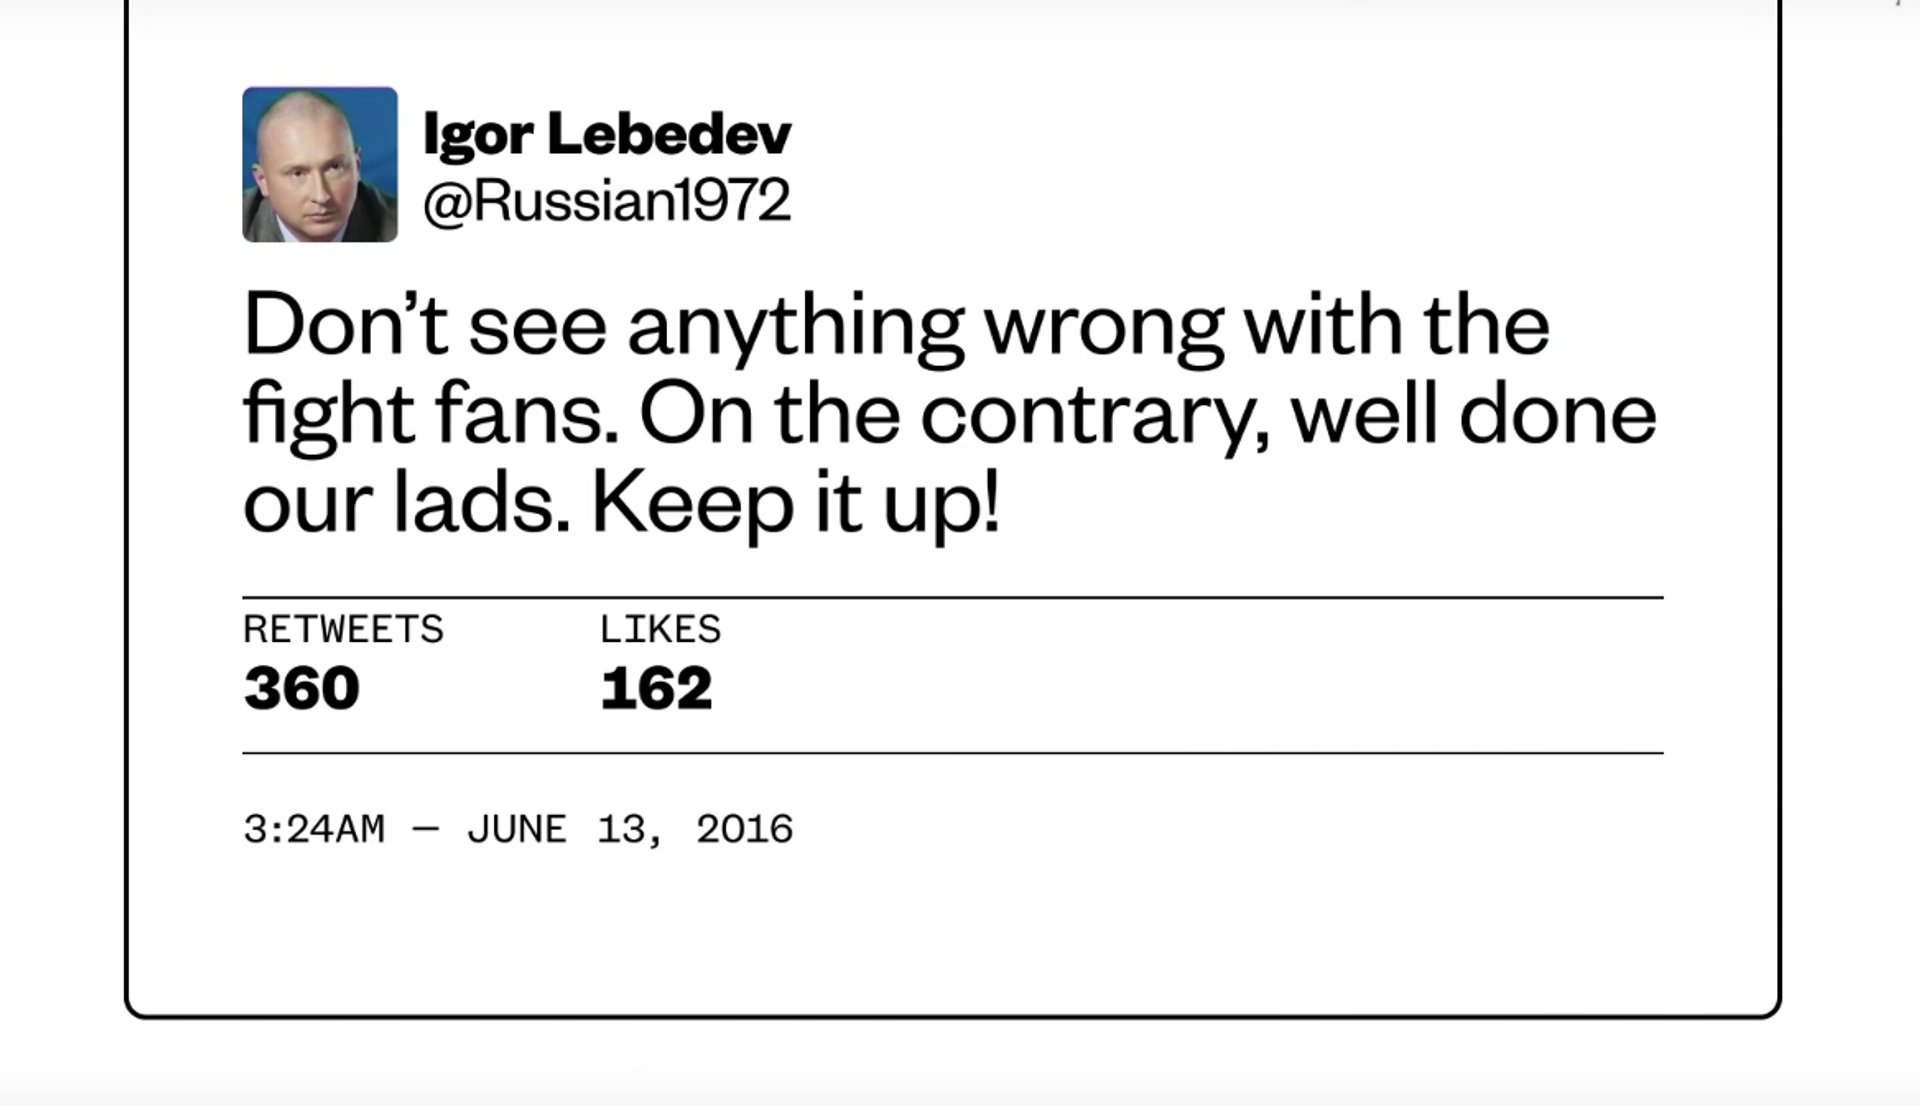 Igor Lebedev tweet